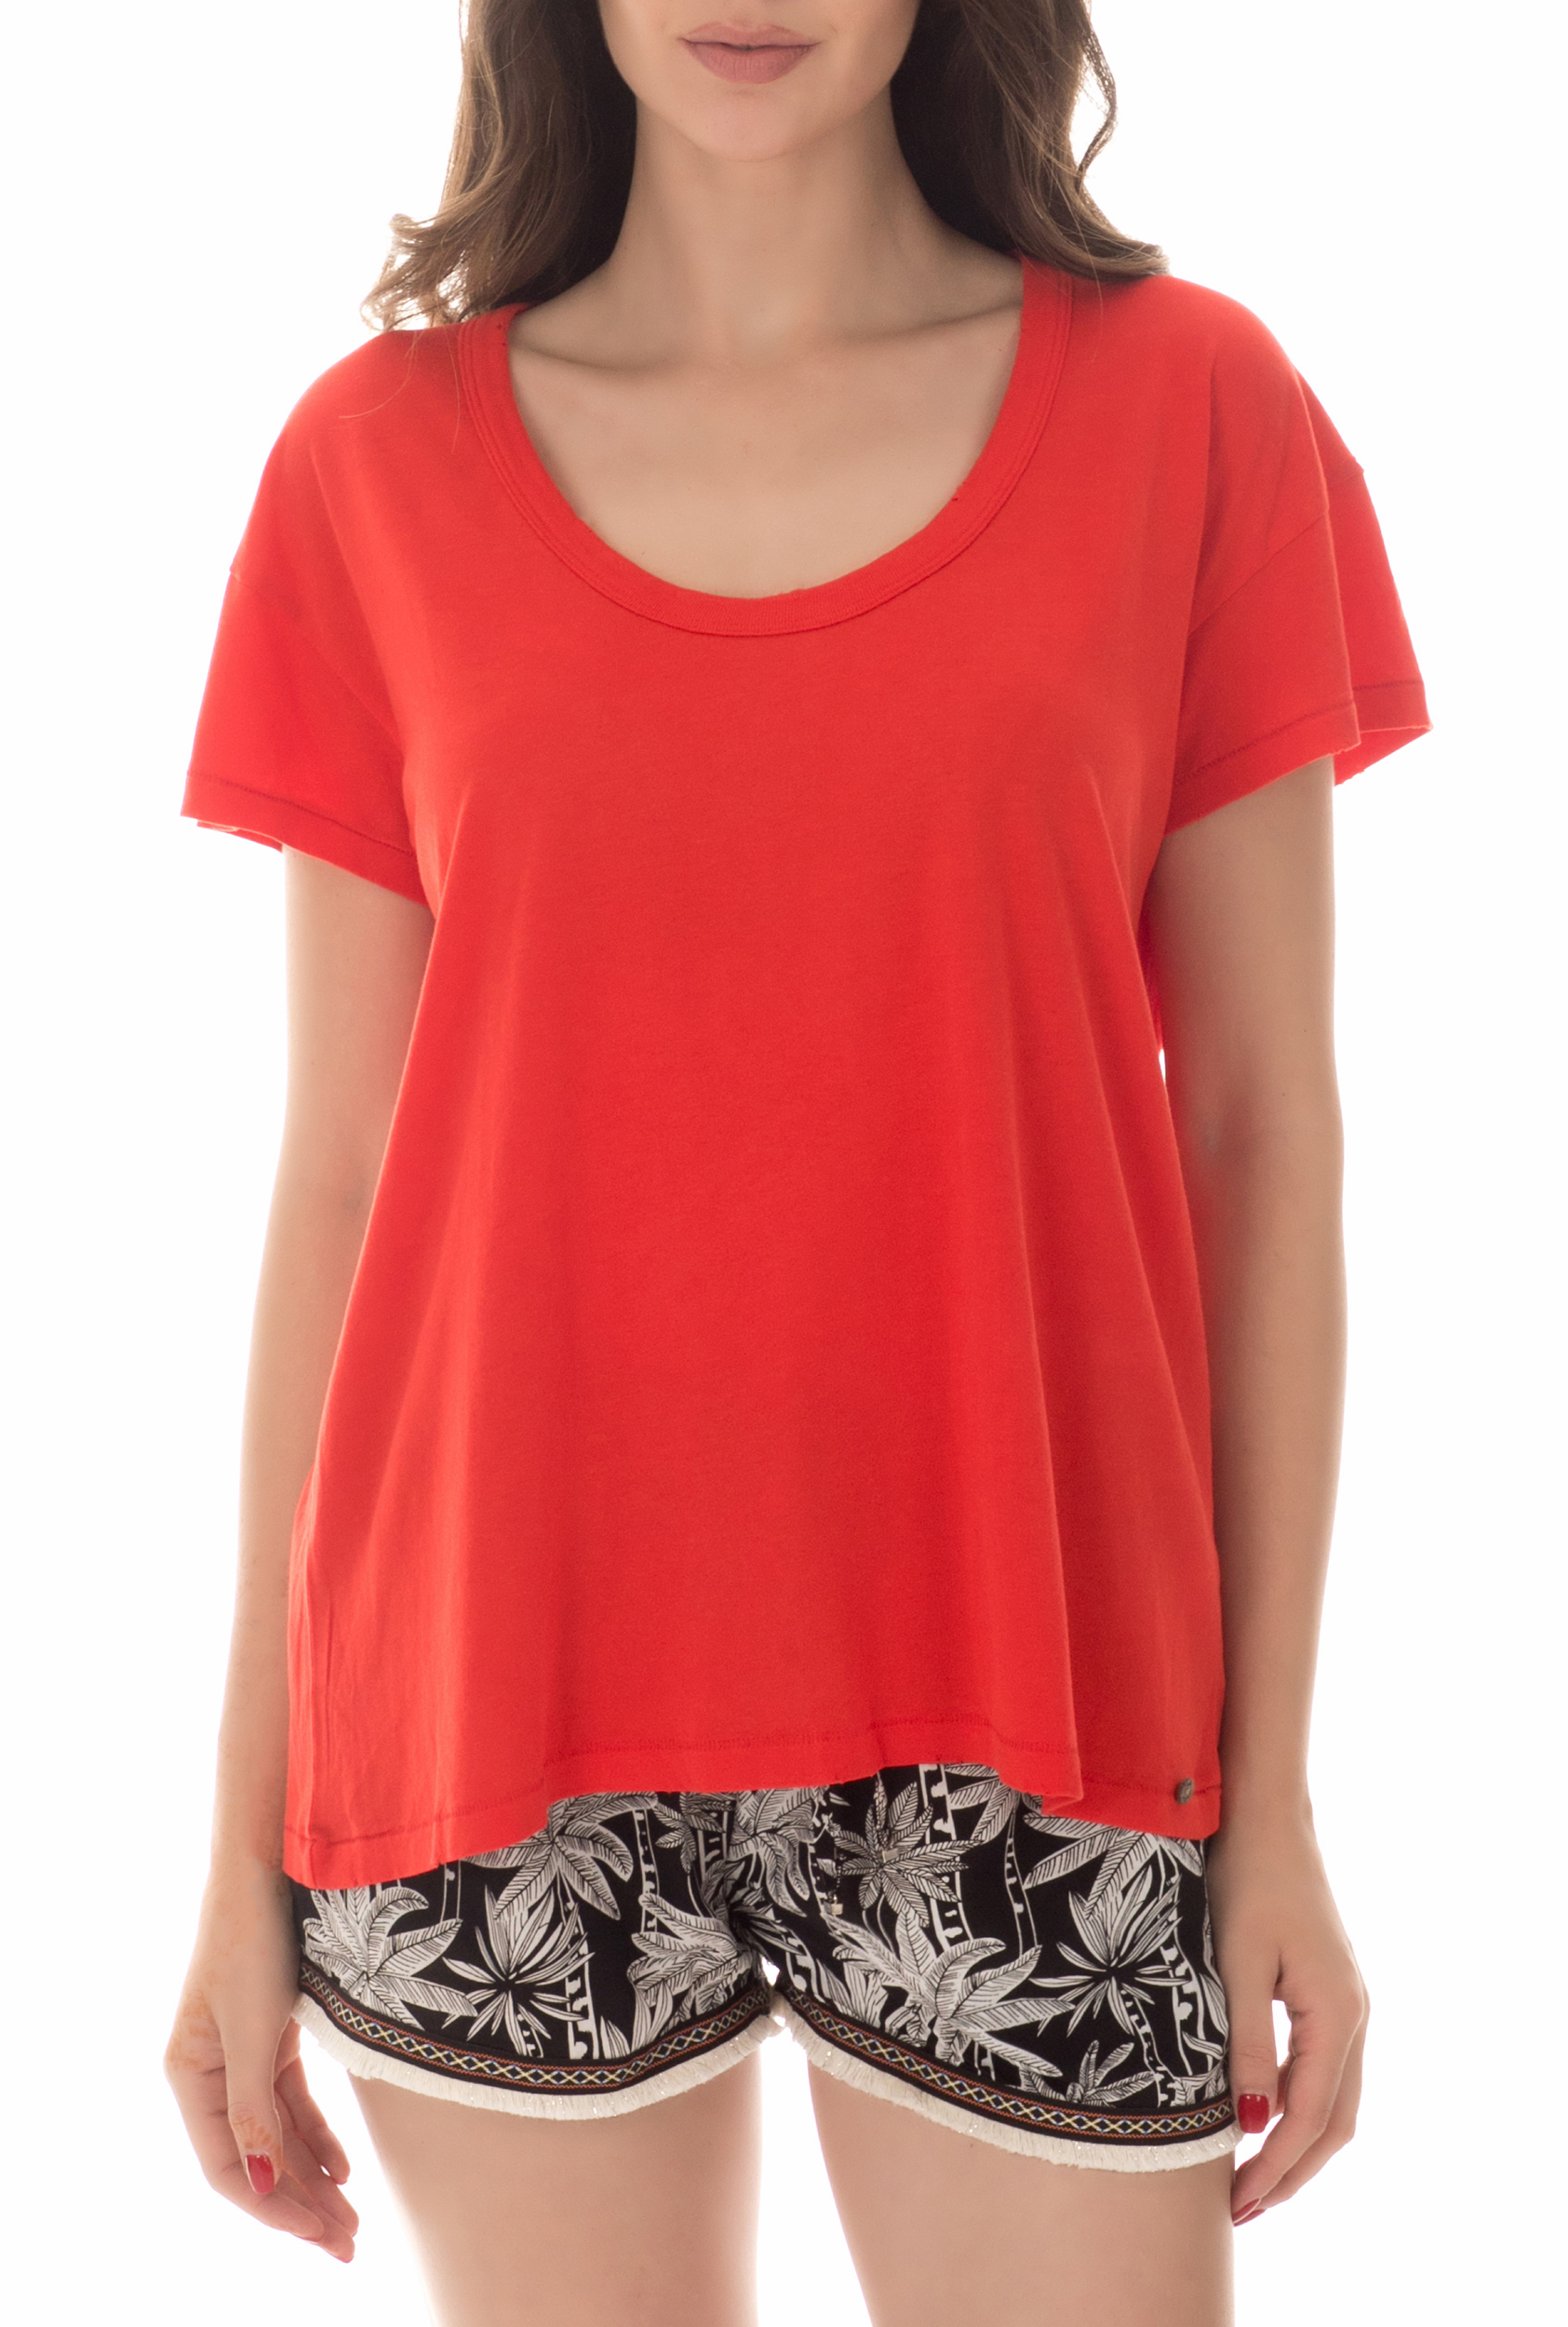 Γυναικεία/Ρούχα/Μπλούζες/Κοντομάνικες COTTON CANDY - Γυναικεία κοντομάνικη μπλούζα COTTON CANDY κόκκινη